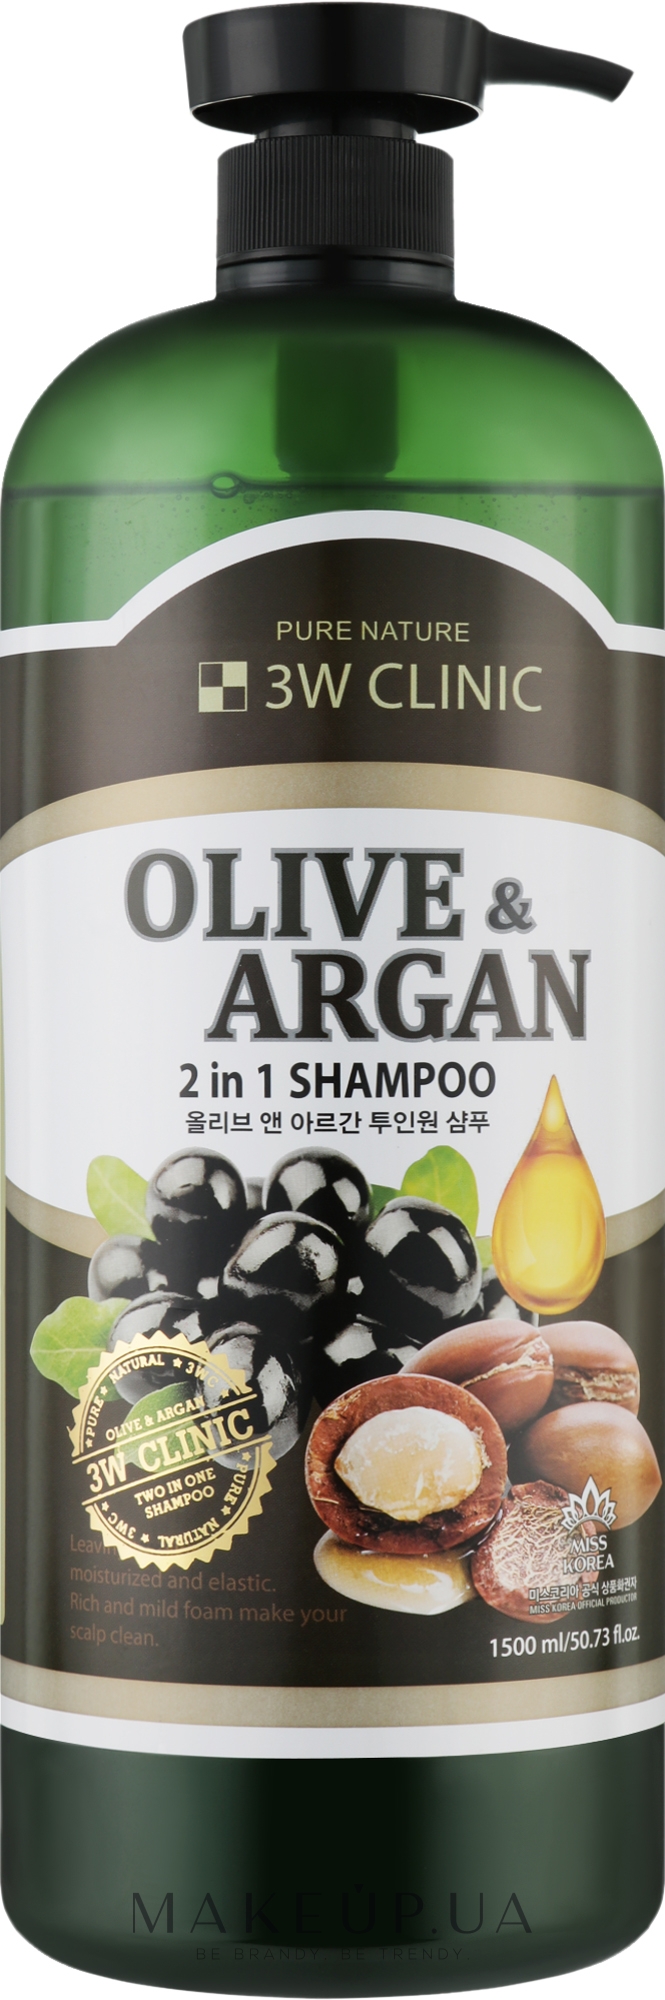 Шампунь для поврежденных волос с аргановым маслом и маслом оливы - 3W Clinic Plive & Argan 2 In 1 Shampoo  — фото 1500ml